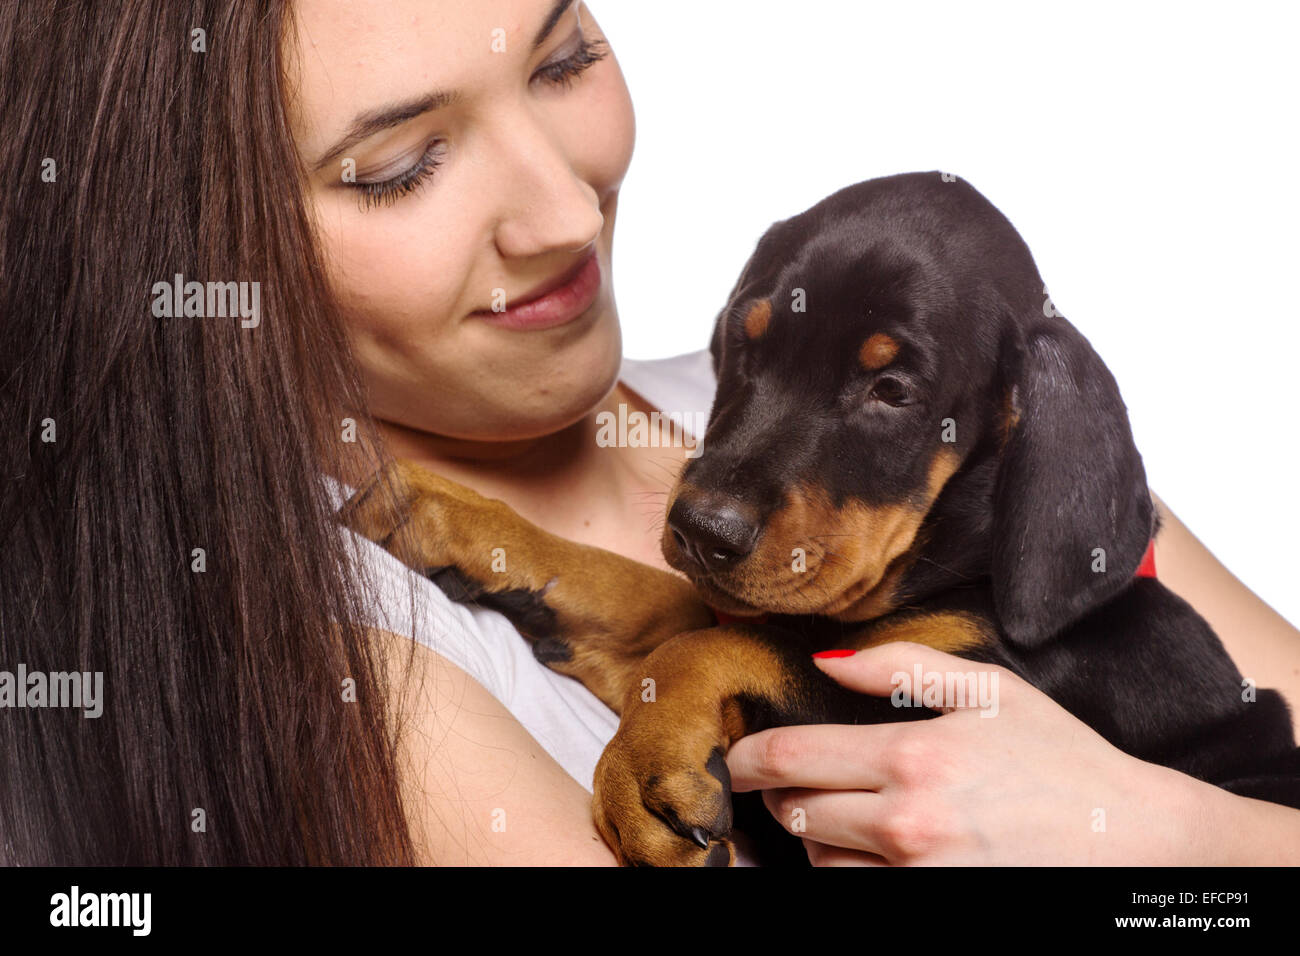 Bruna ragazza baciare il suo cucciolo doberman isolati su sfondo bianco Foto Stock